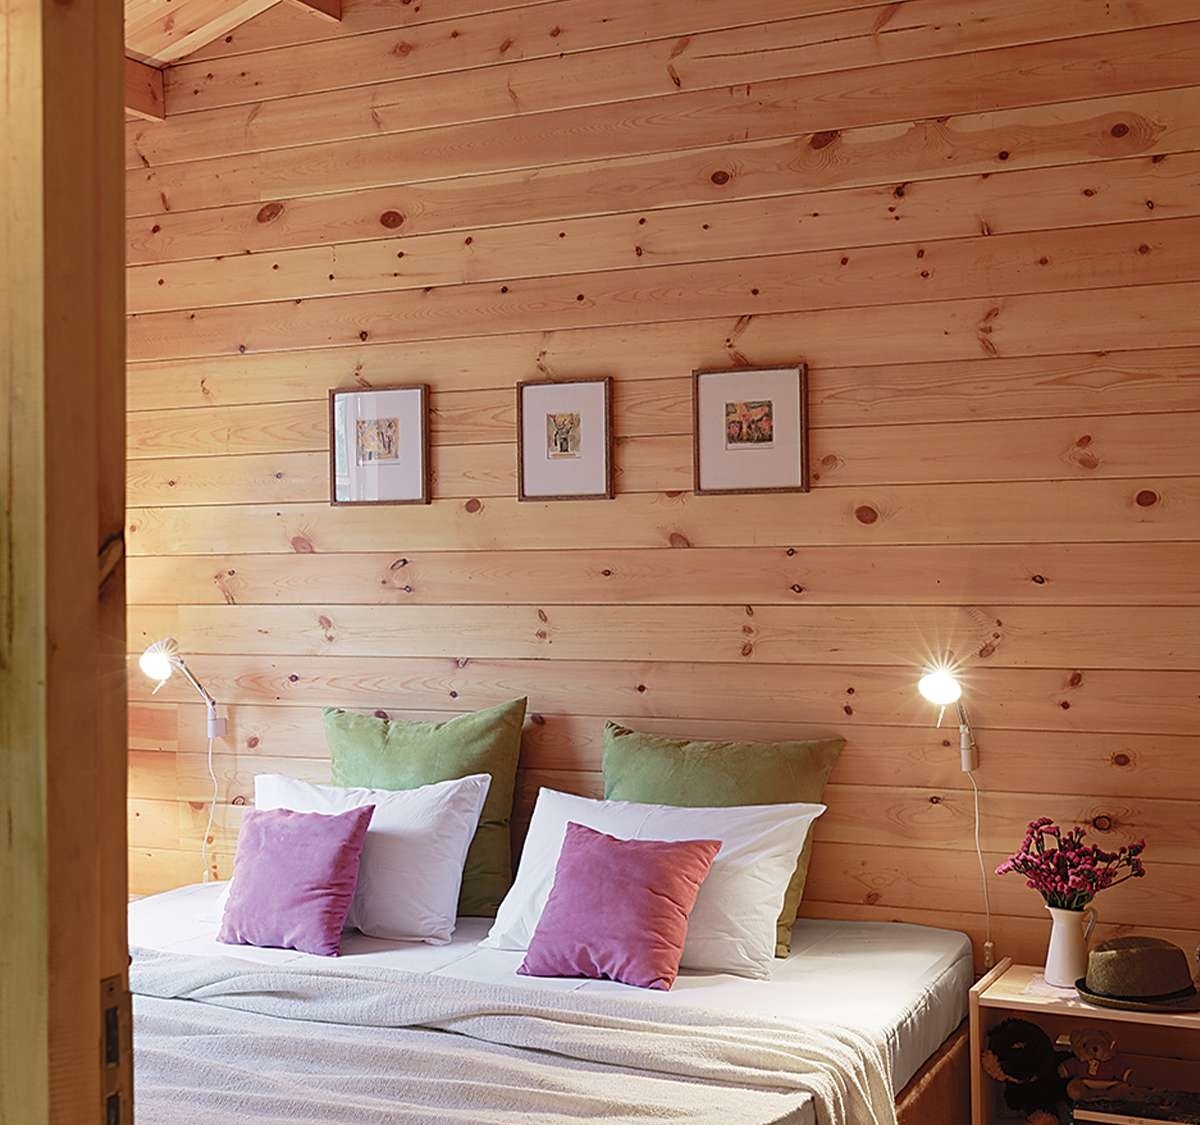 Phòng ngủ êm ái, nhẹ nhàng và tối giản.